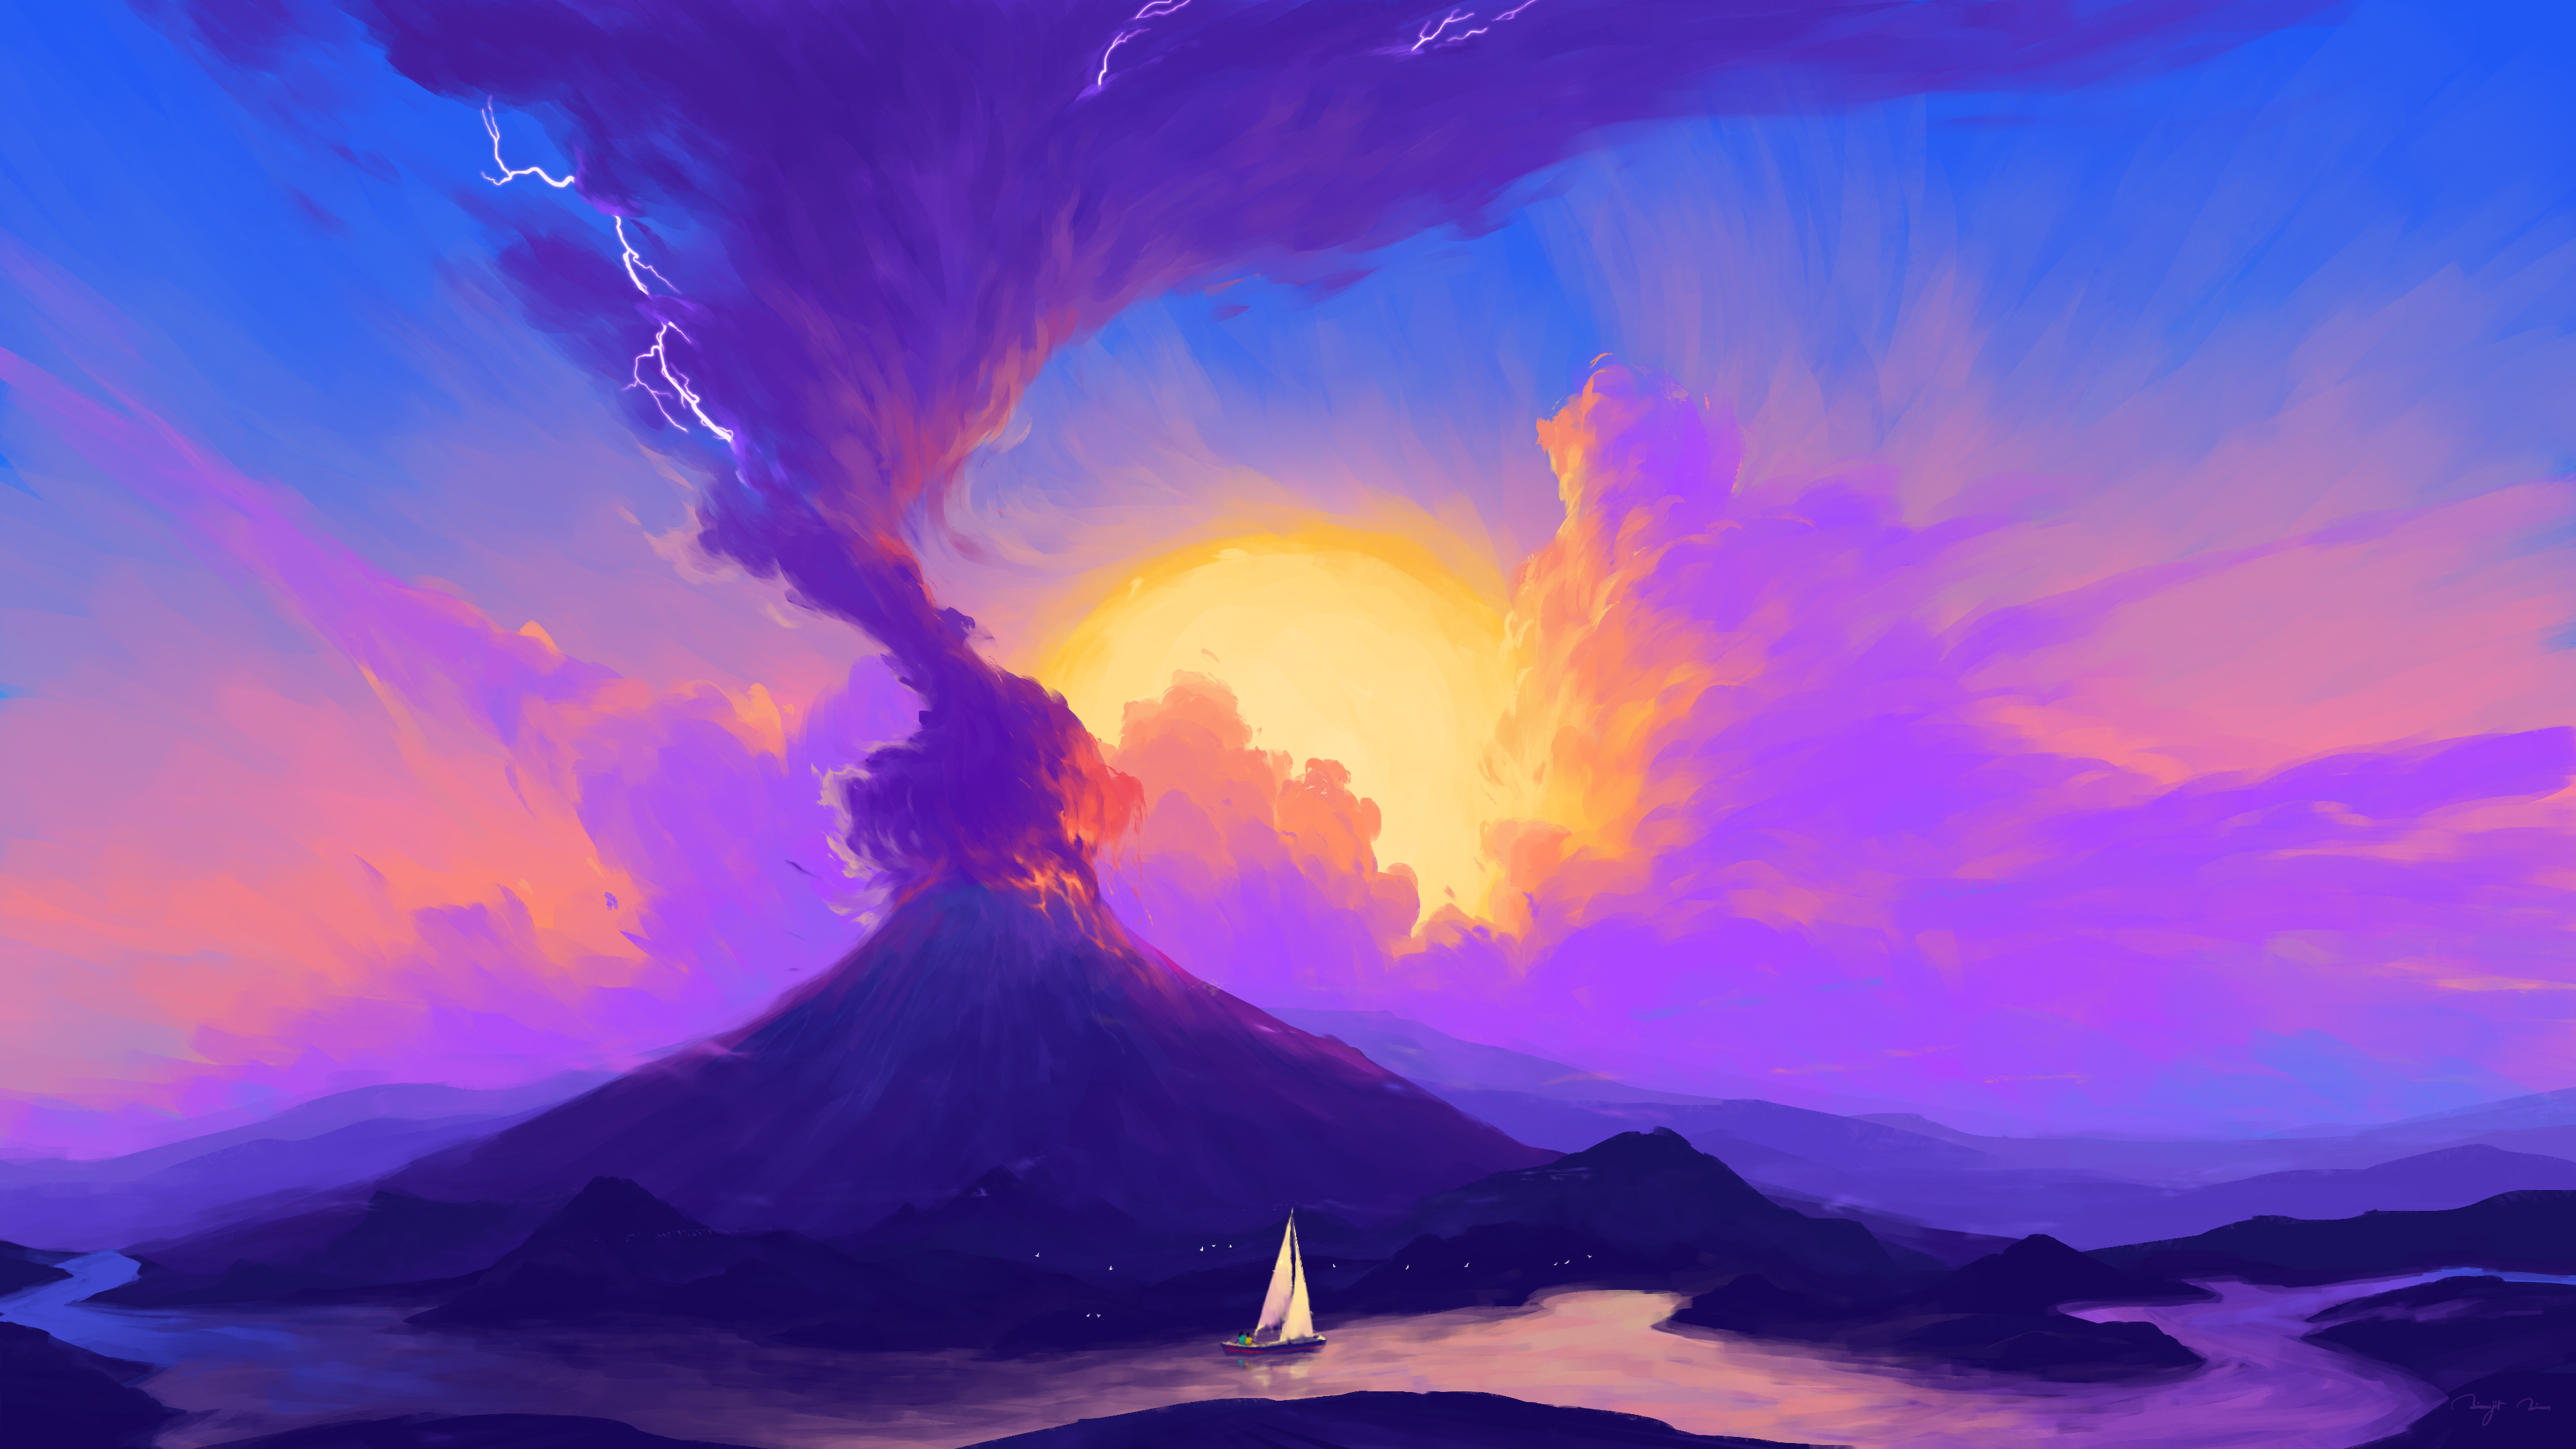 General 3840x2160 BisBiswas digital art artwork illustration eruption volcano landscape clouds ship boat nature 4K river Sun sky signature